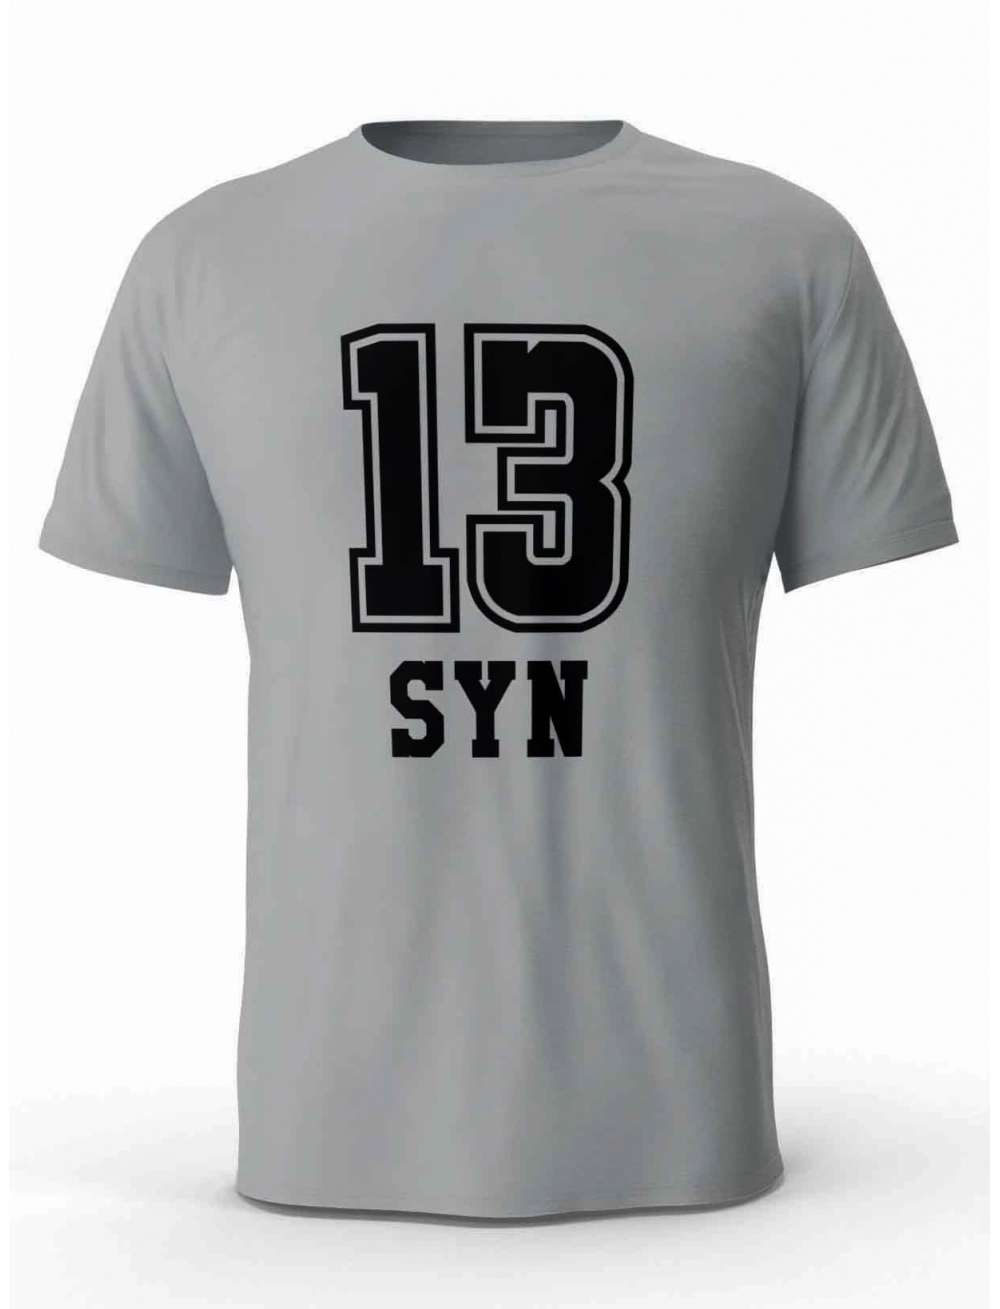 Koszulka Męska 13 Syn, T-shirt dla Mężczyzny